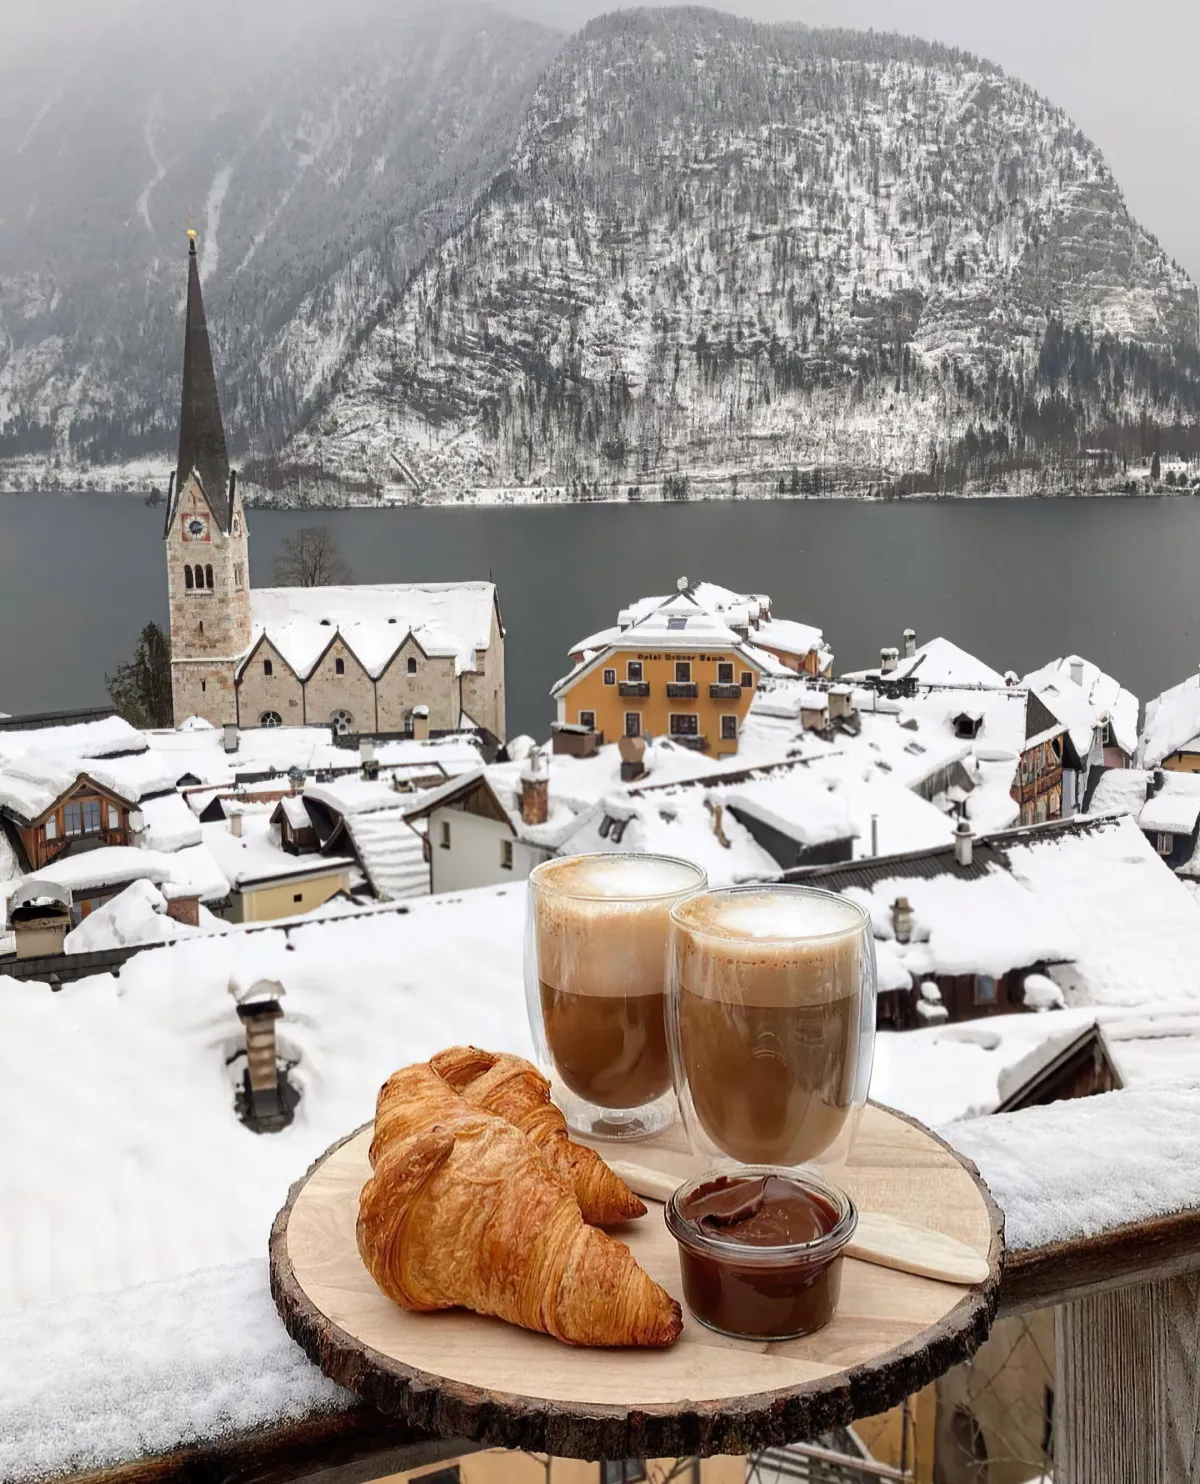 verres cafe latte croissants petit dejeuner vue fonds d еcran paysage neige